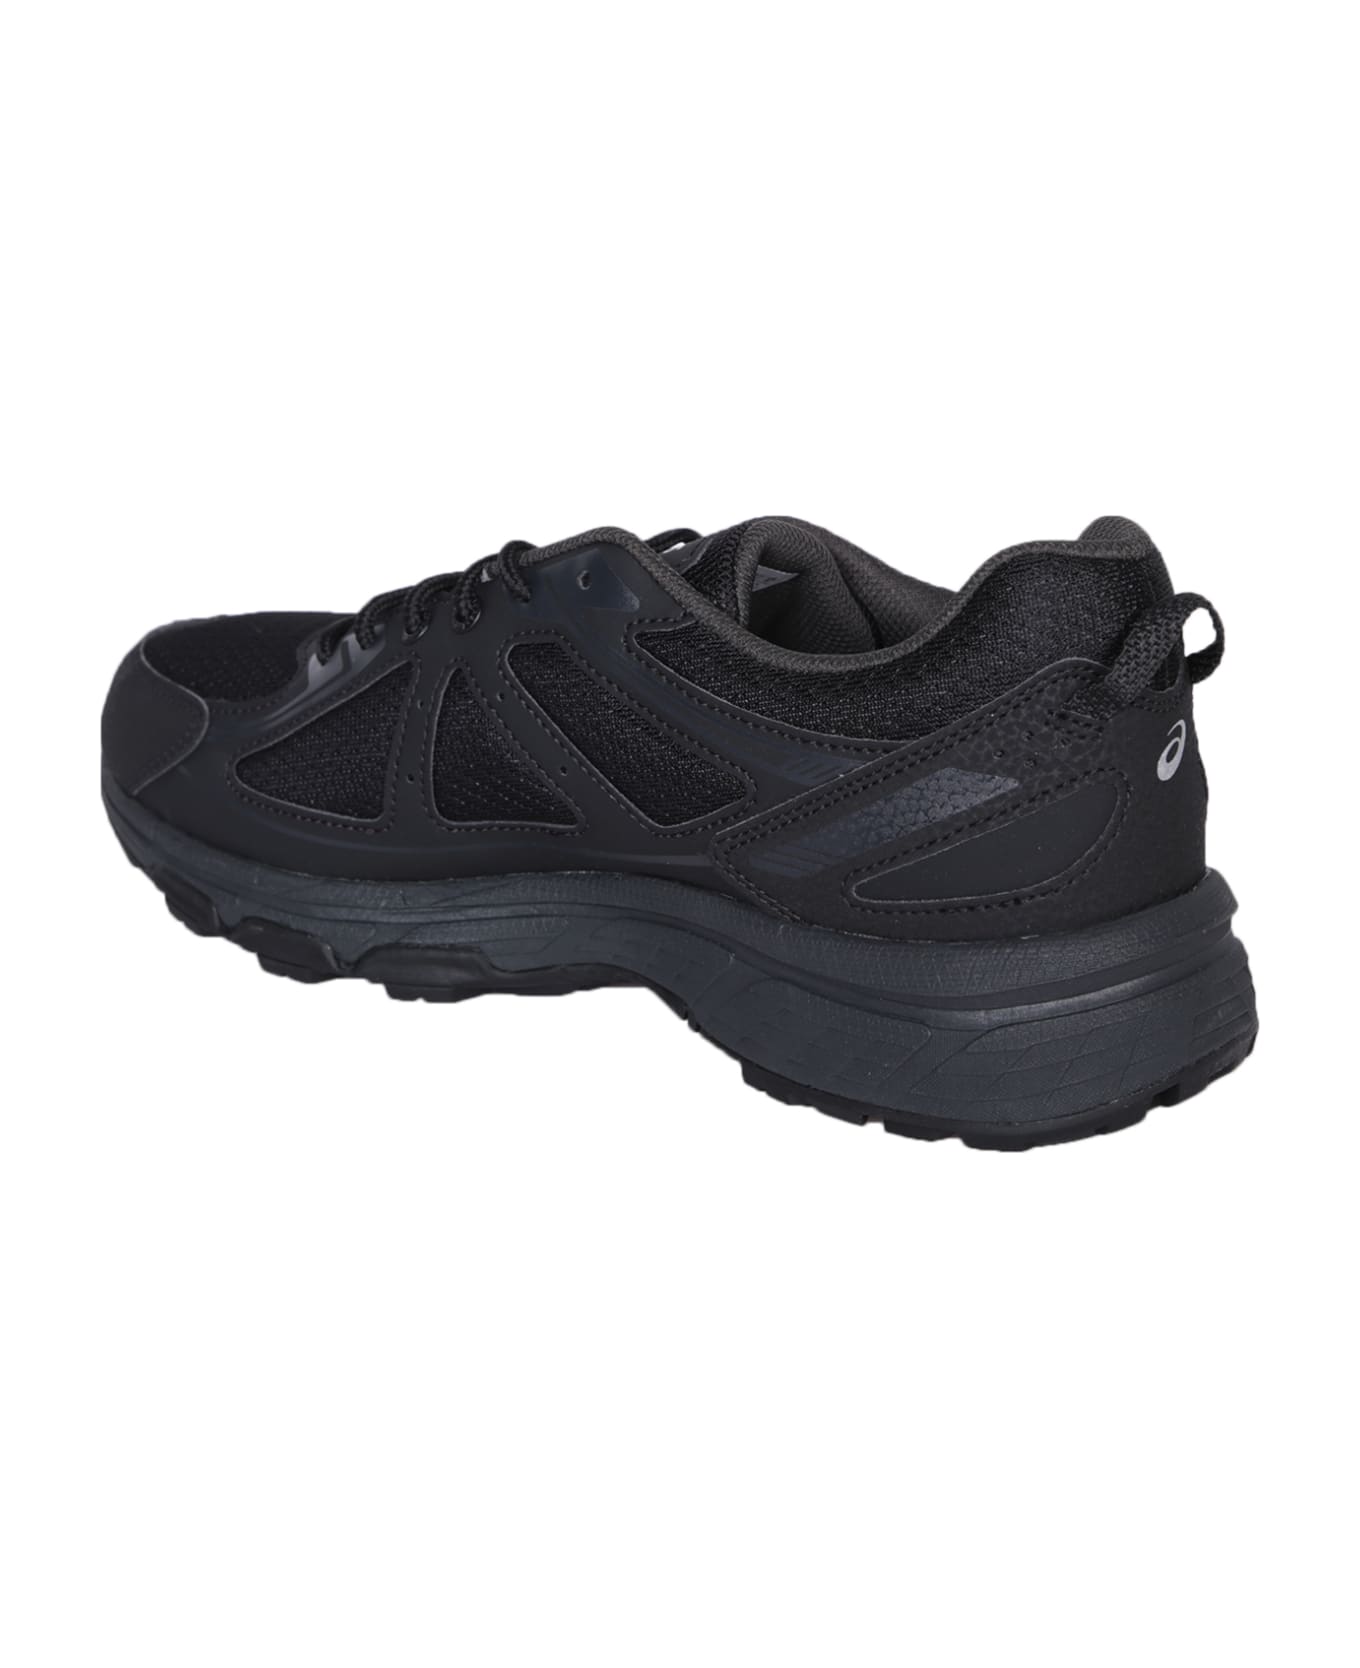 Asics Gel-venture 6 Black Sneakers - Black